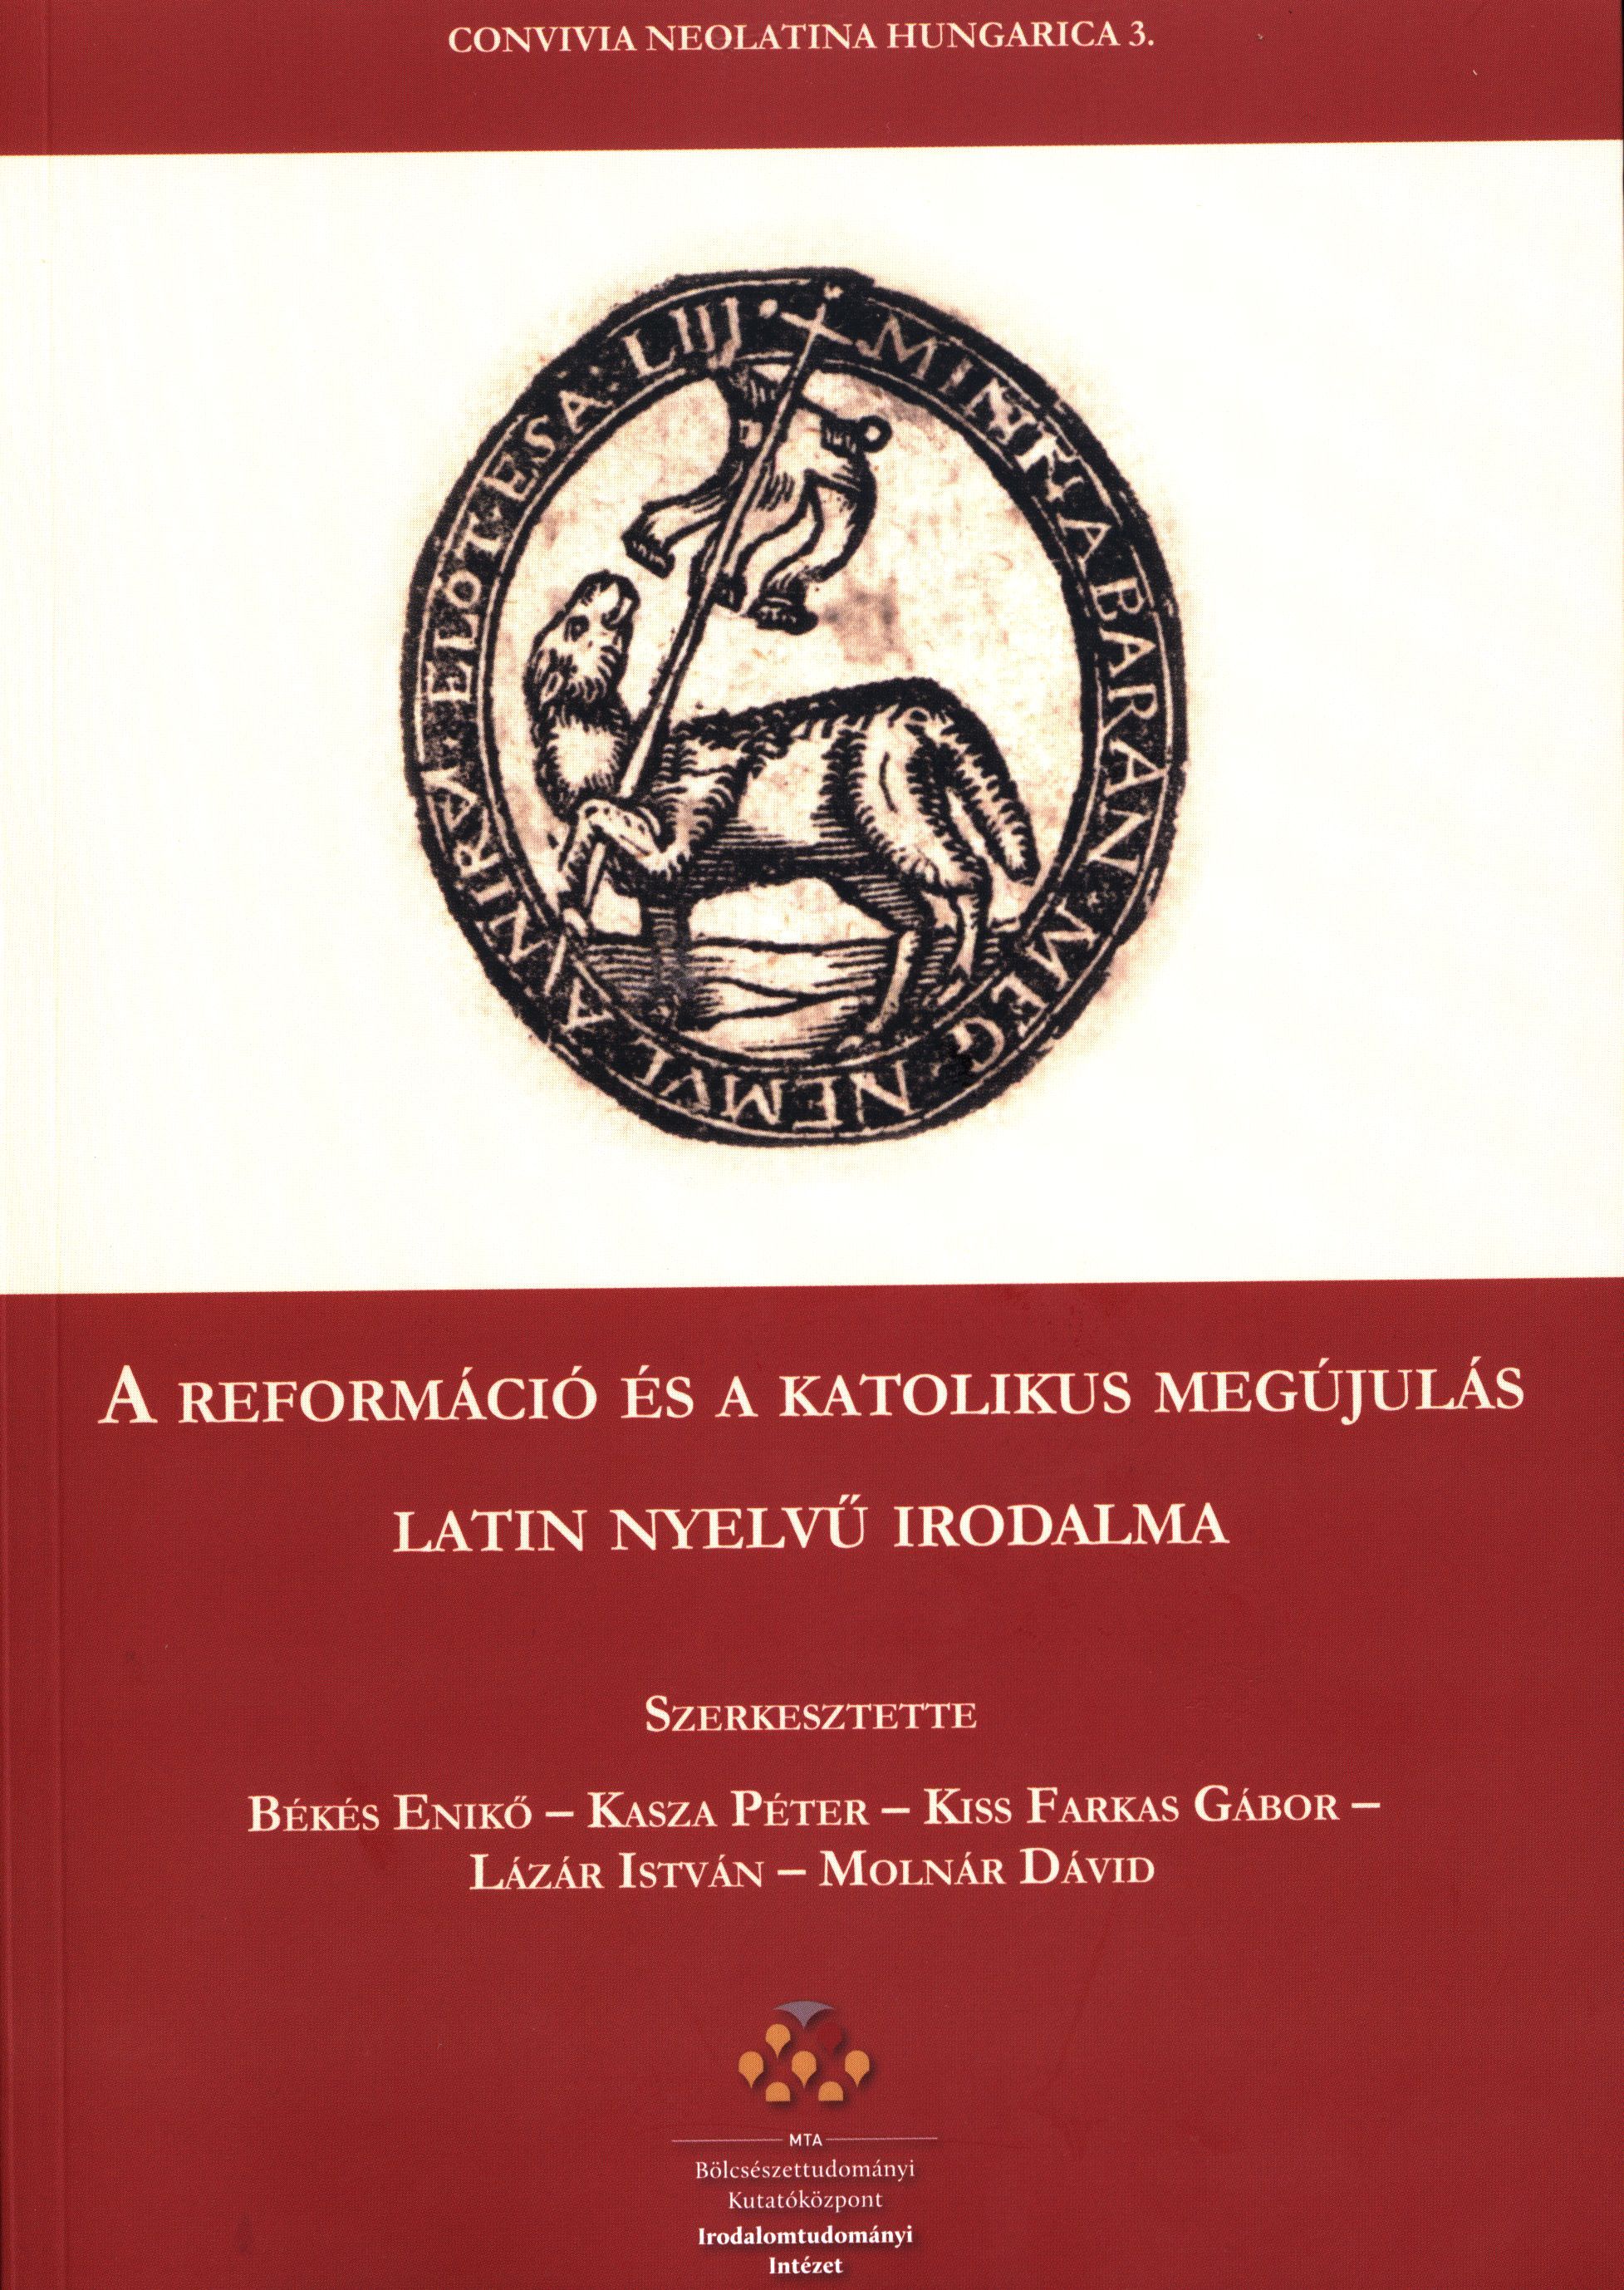 A reformáció és a katolikus megújulás latin nyelvű irodalma: új kötet az Irodalomtudományi Intézet kiadásában